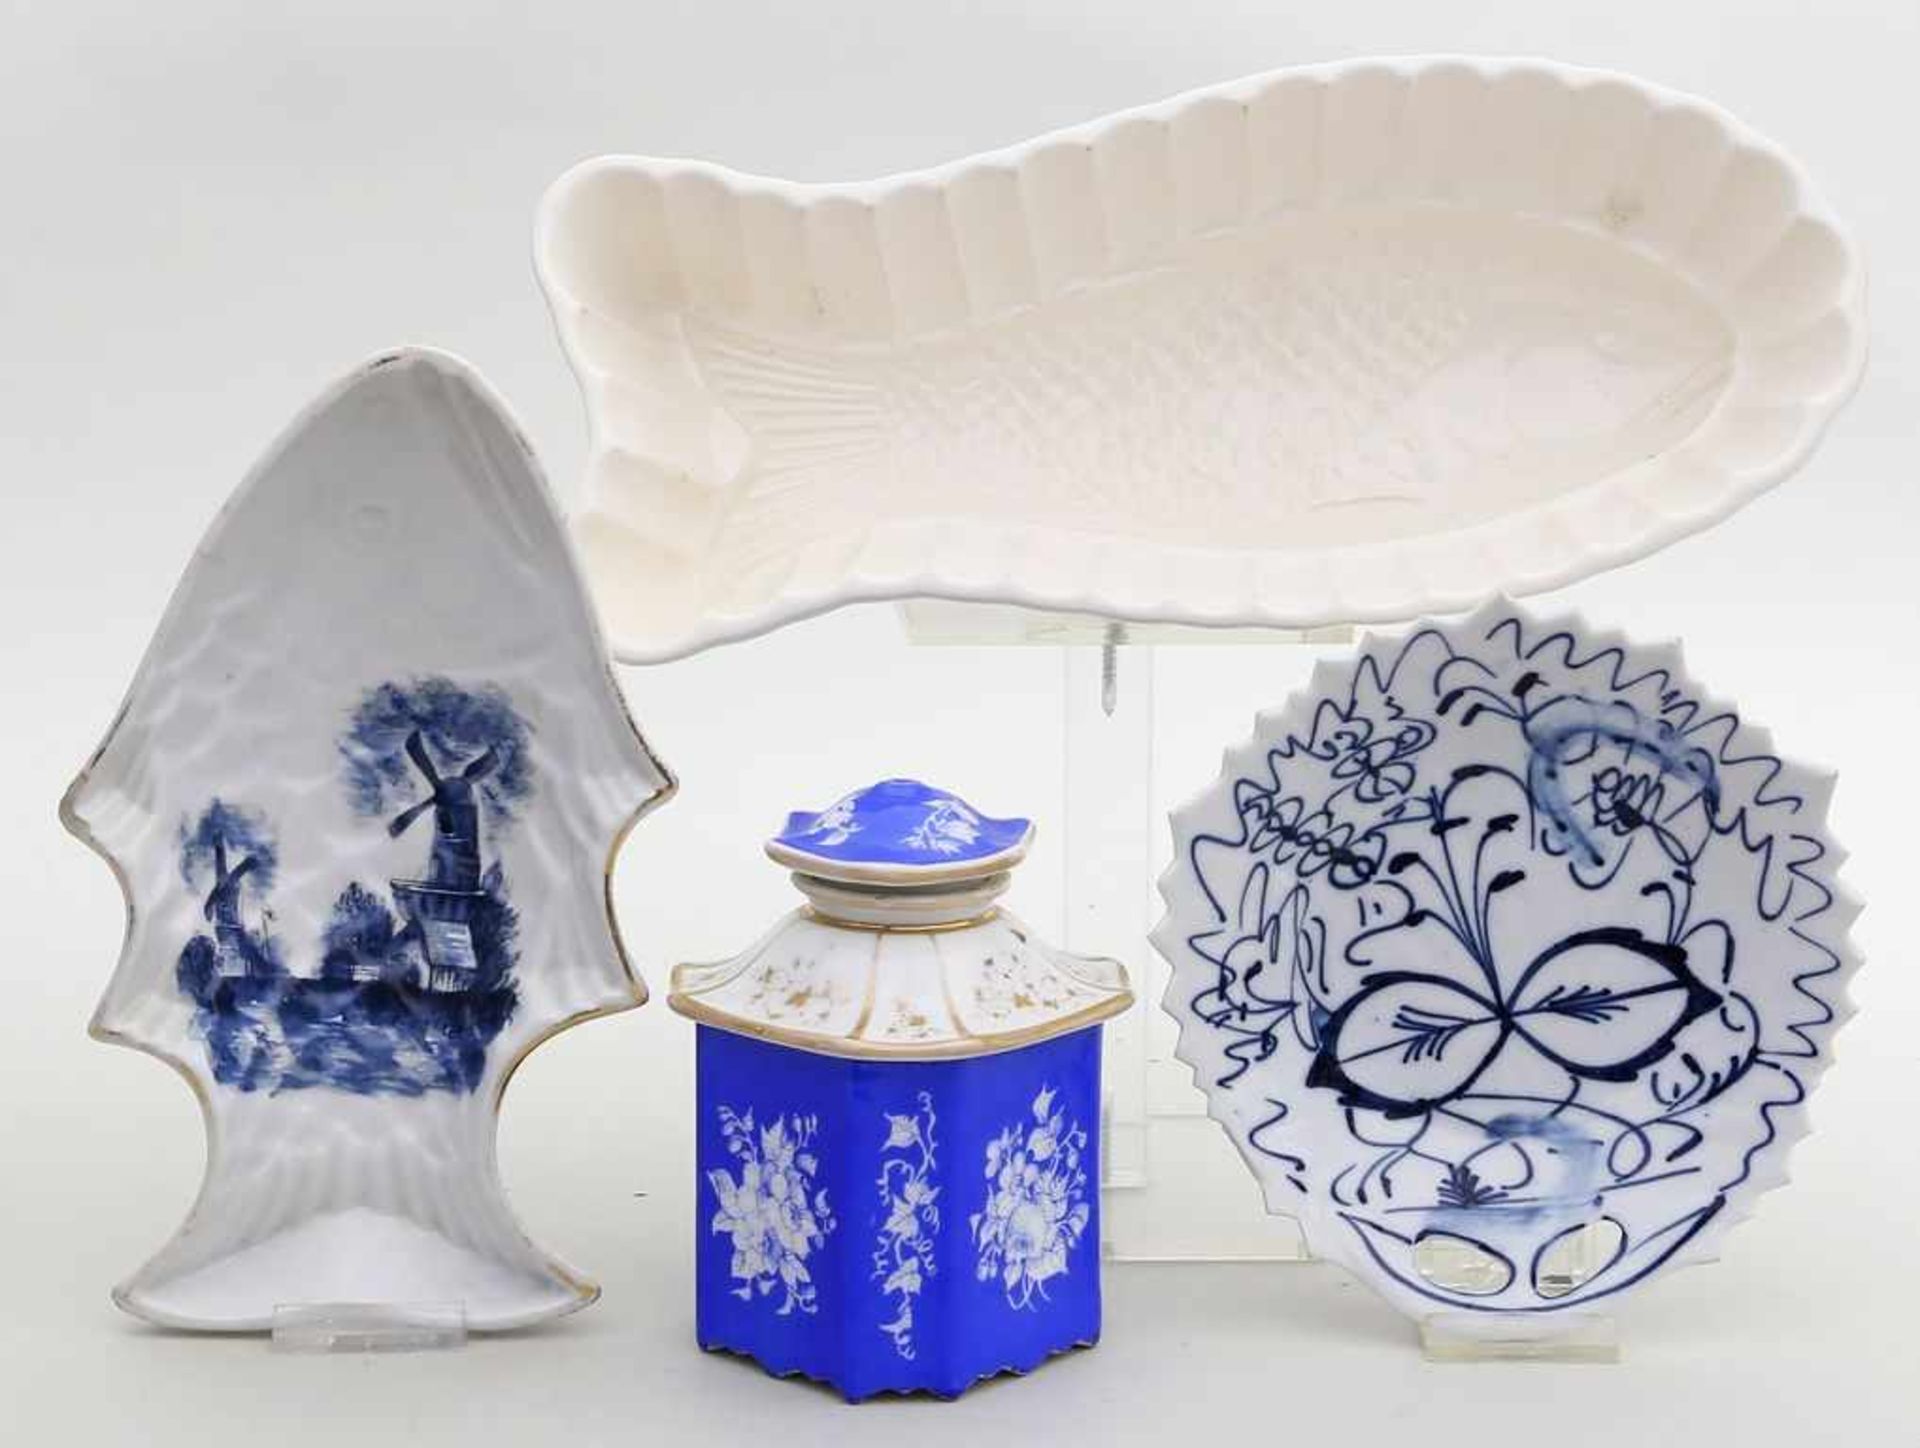 Biedermeier-Teedose, 2 Pudding-Fischformen und Schale.Porzellan/Keramik. Verschiedene Formen und